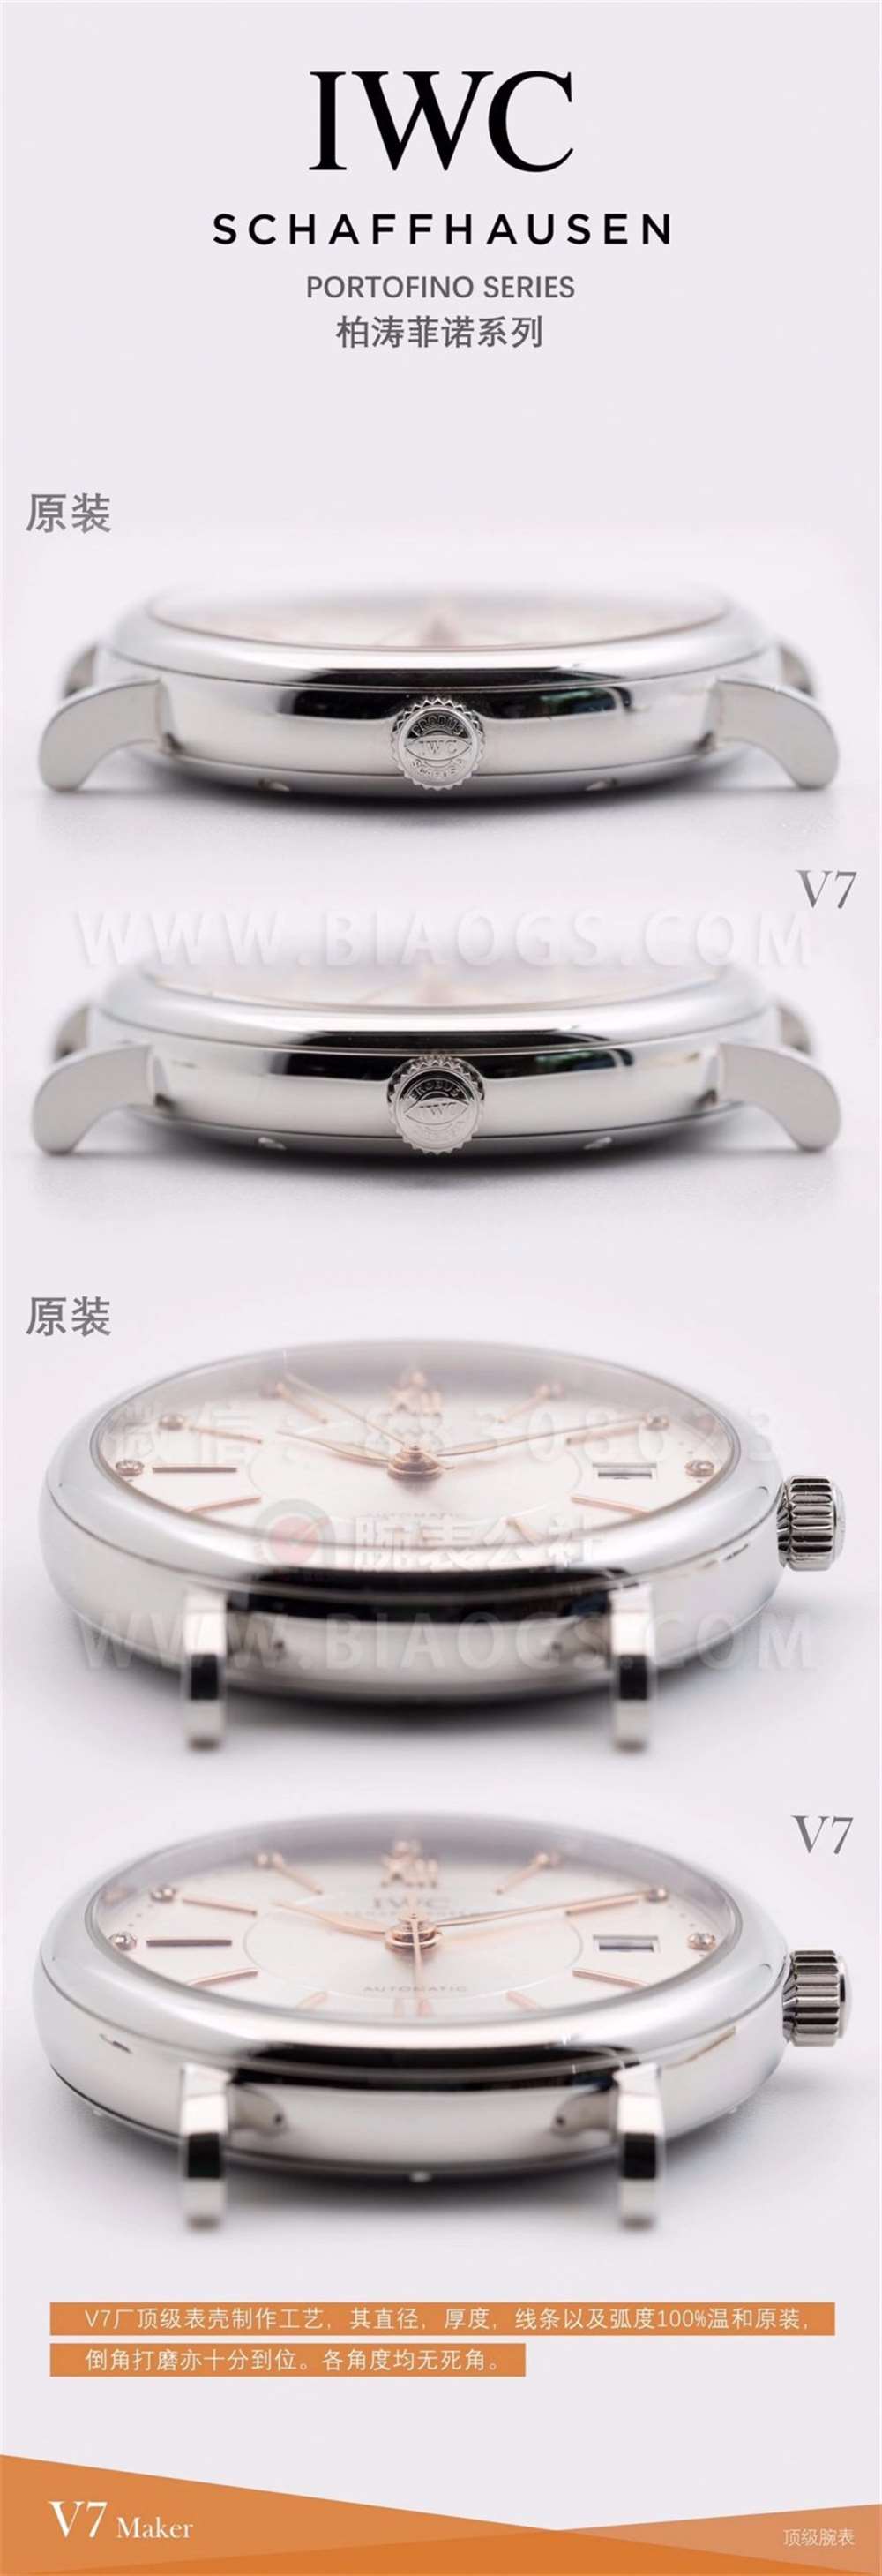 V7厂万国柏涛菲诺37mm女士腕表对比正品评测  第7张